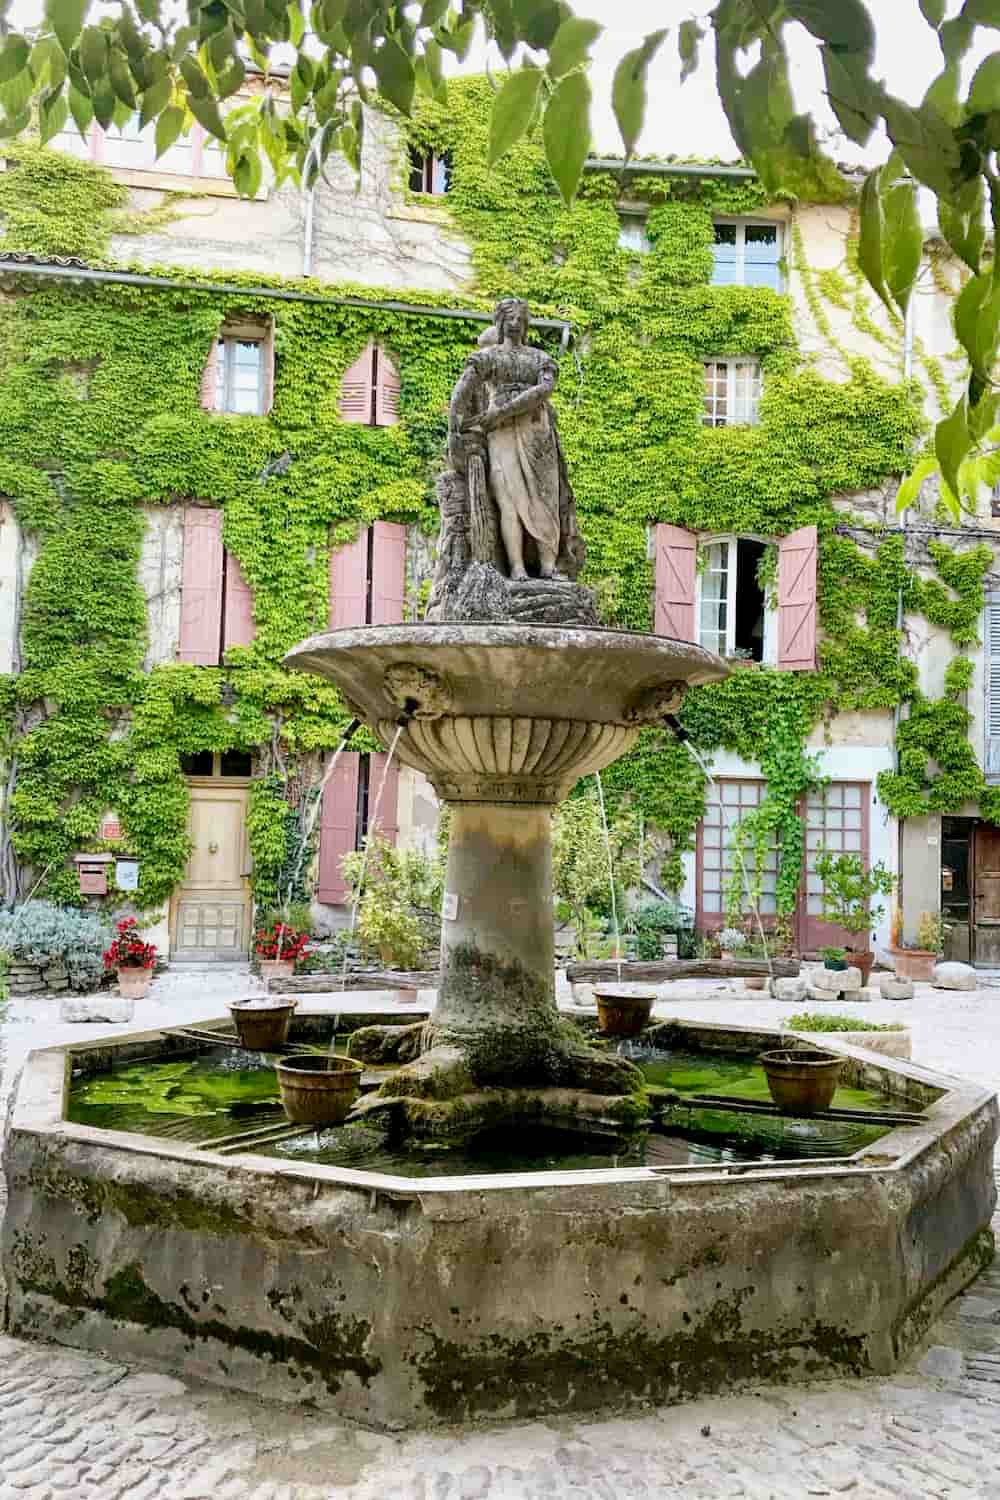 provencal village of Saignon fountain